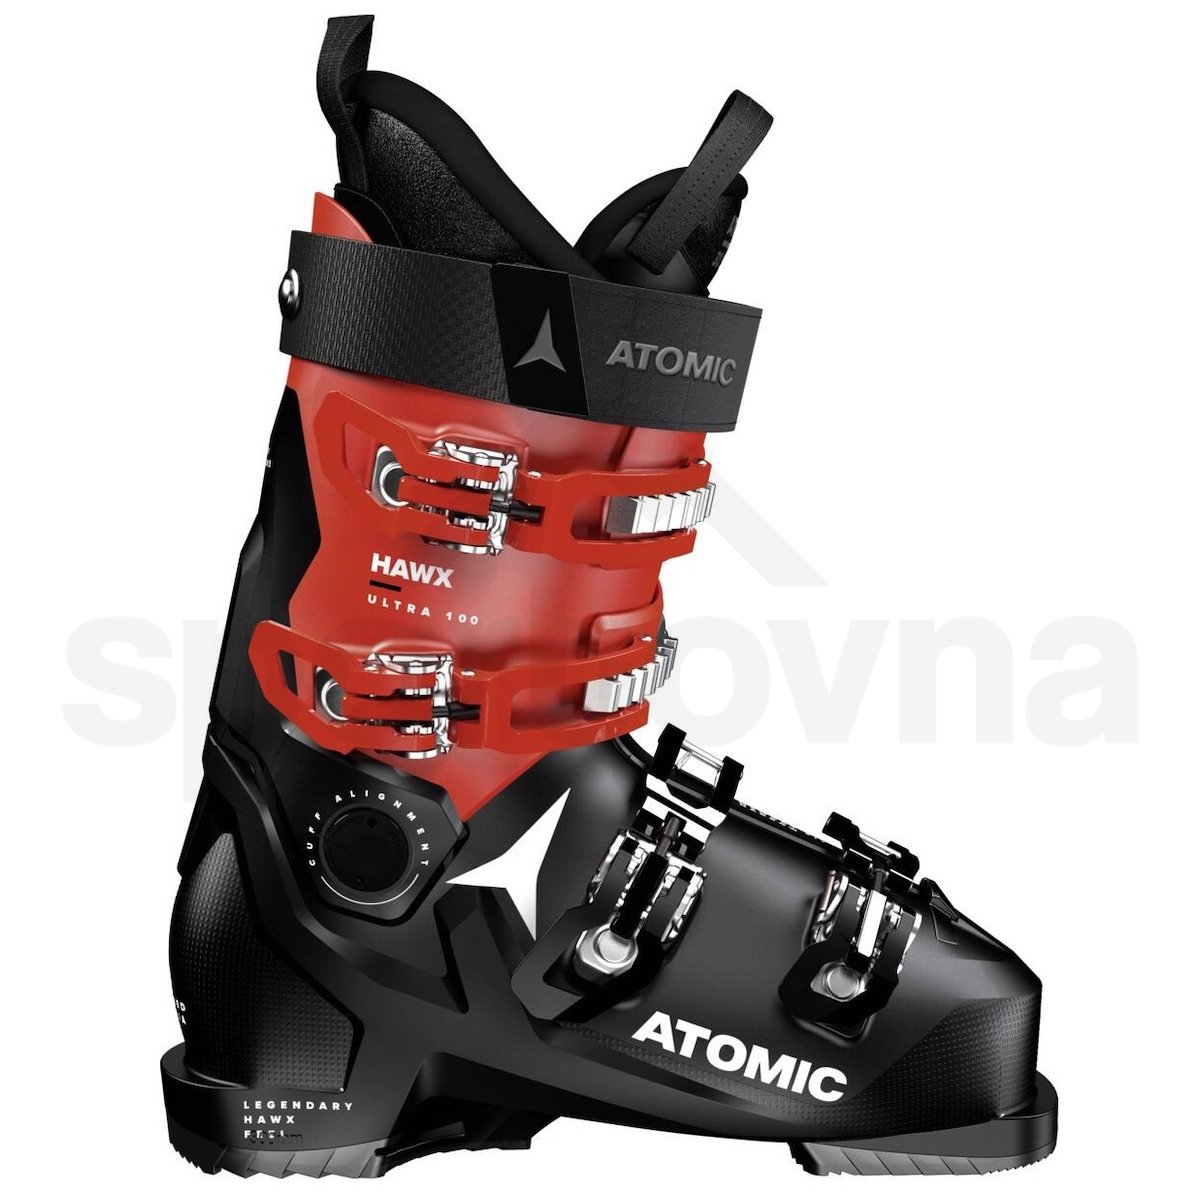 Lyžařské boty Atomic Hawx Ultra 100 - černá/červená